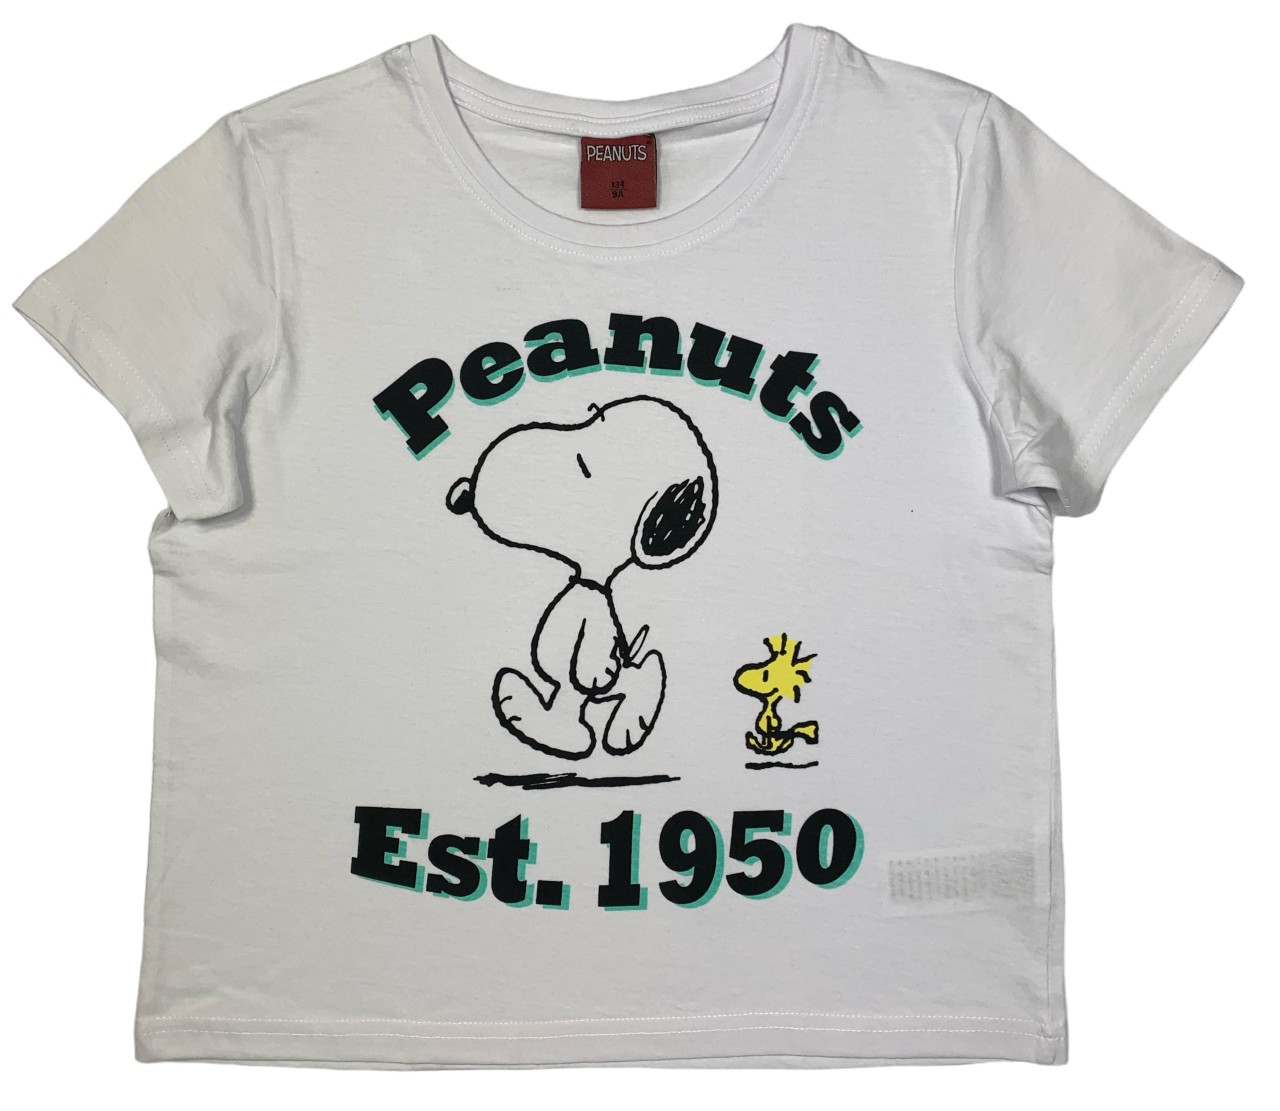 EPlus Dívčí tričko - Snoopy bílé Velikost - děti: 164